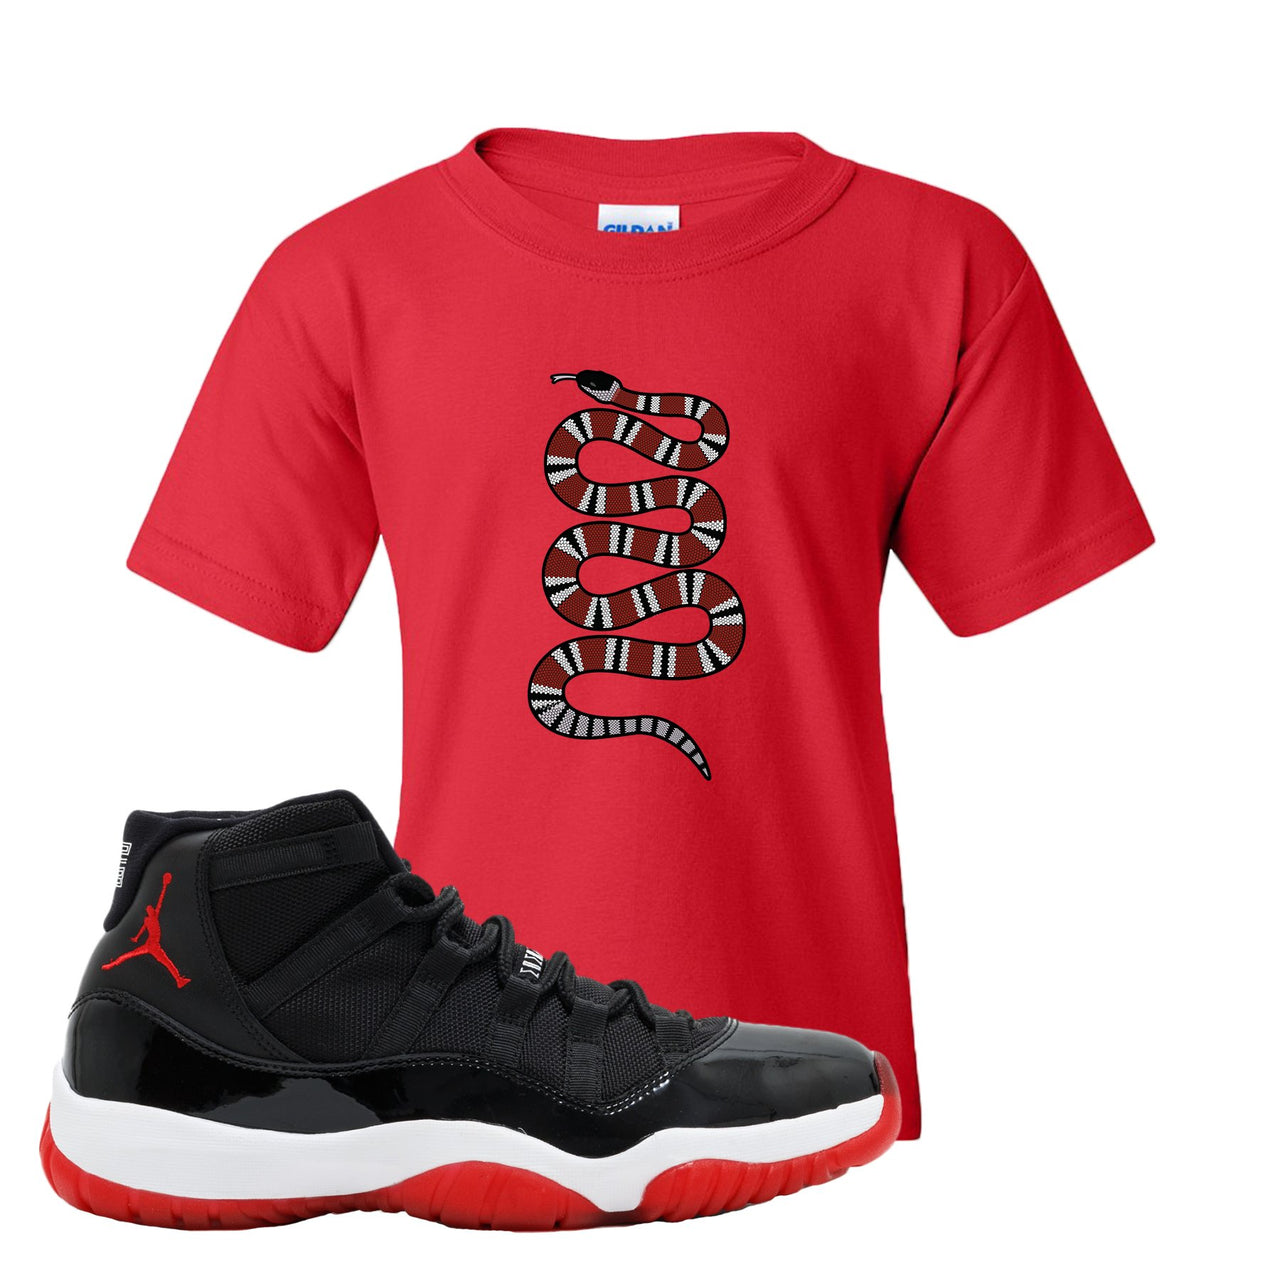 Jordan 11 Bred Coiled Snake Red Sneaker Hook Up Kid's T-Shirt